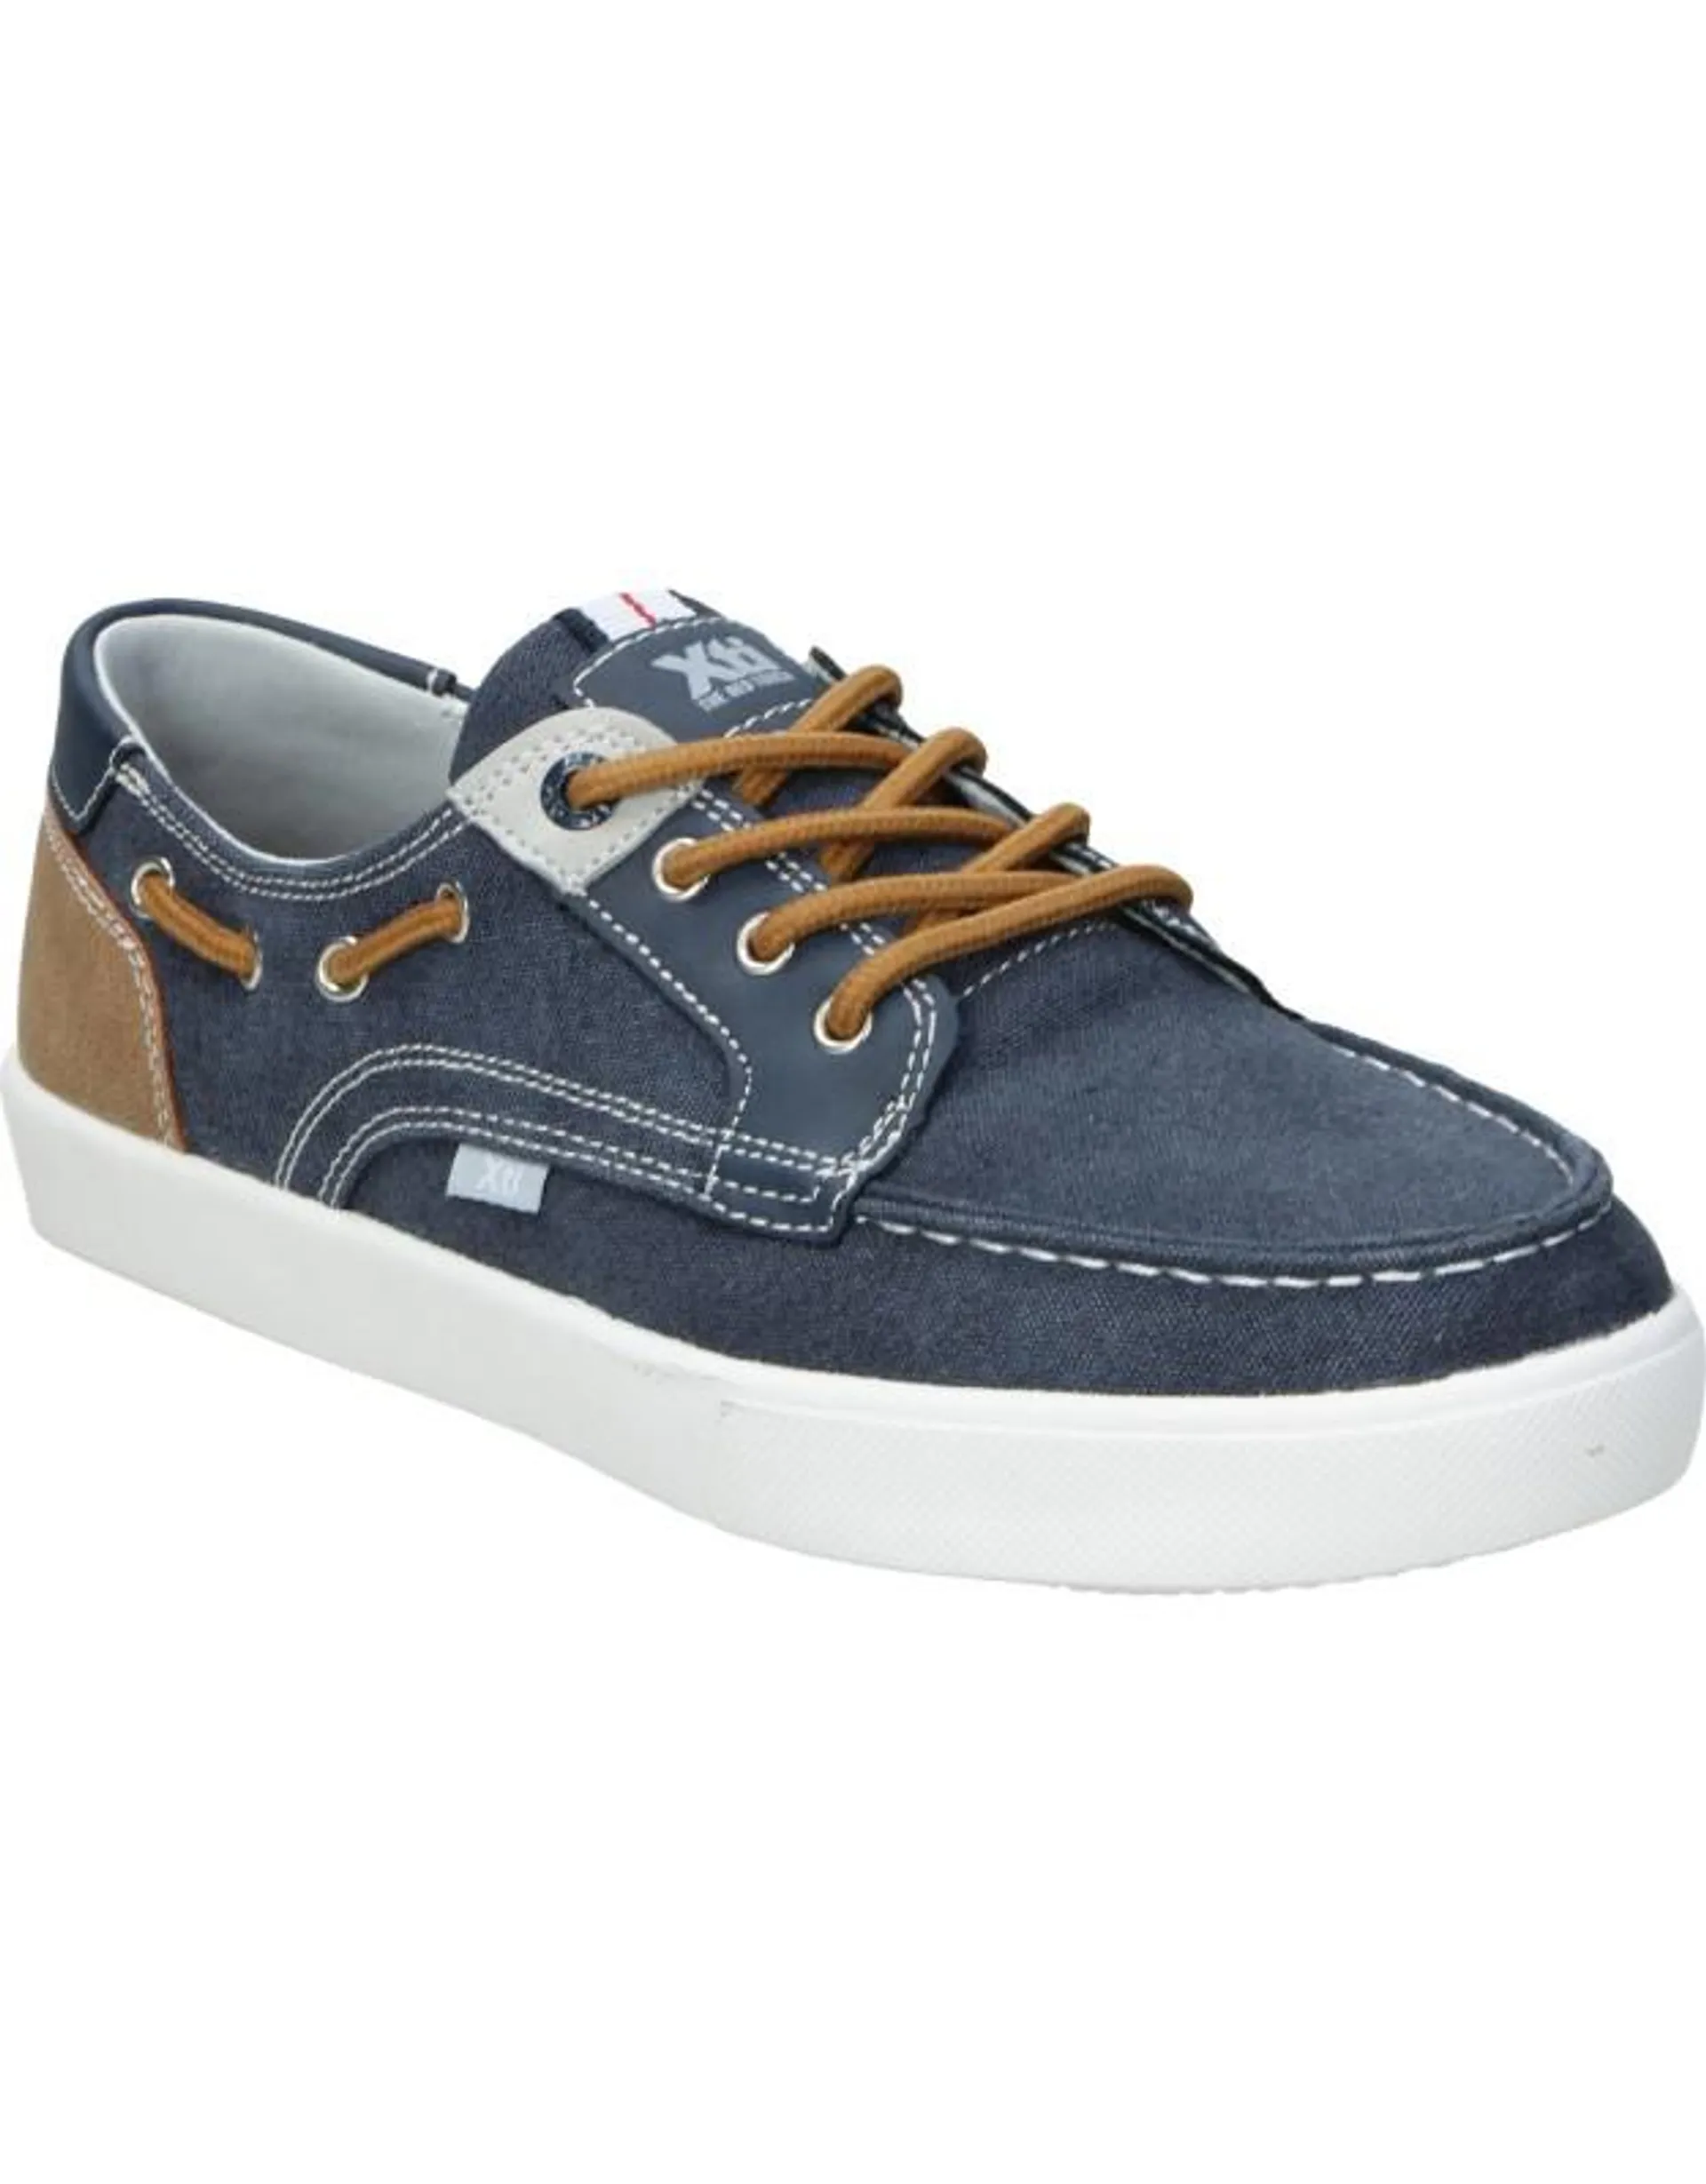 Zapatos cómodo de niño XTI 57952 color azul